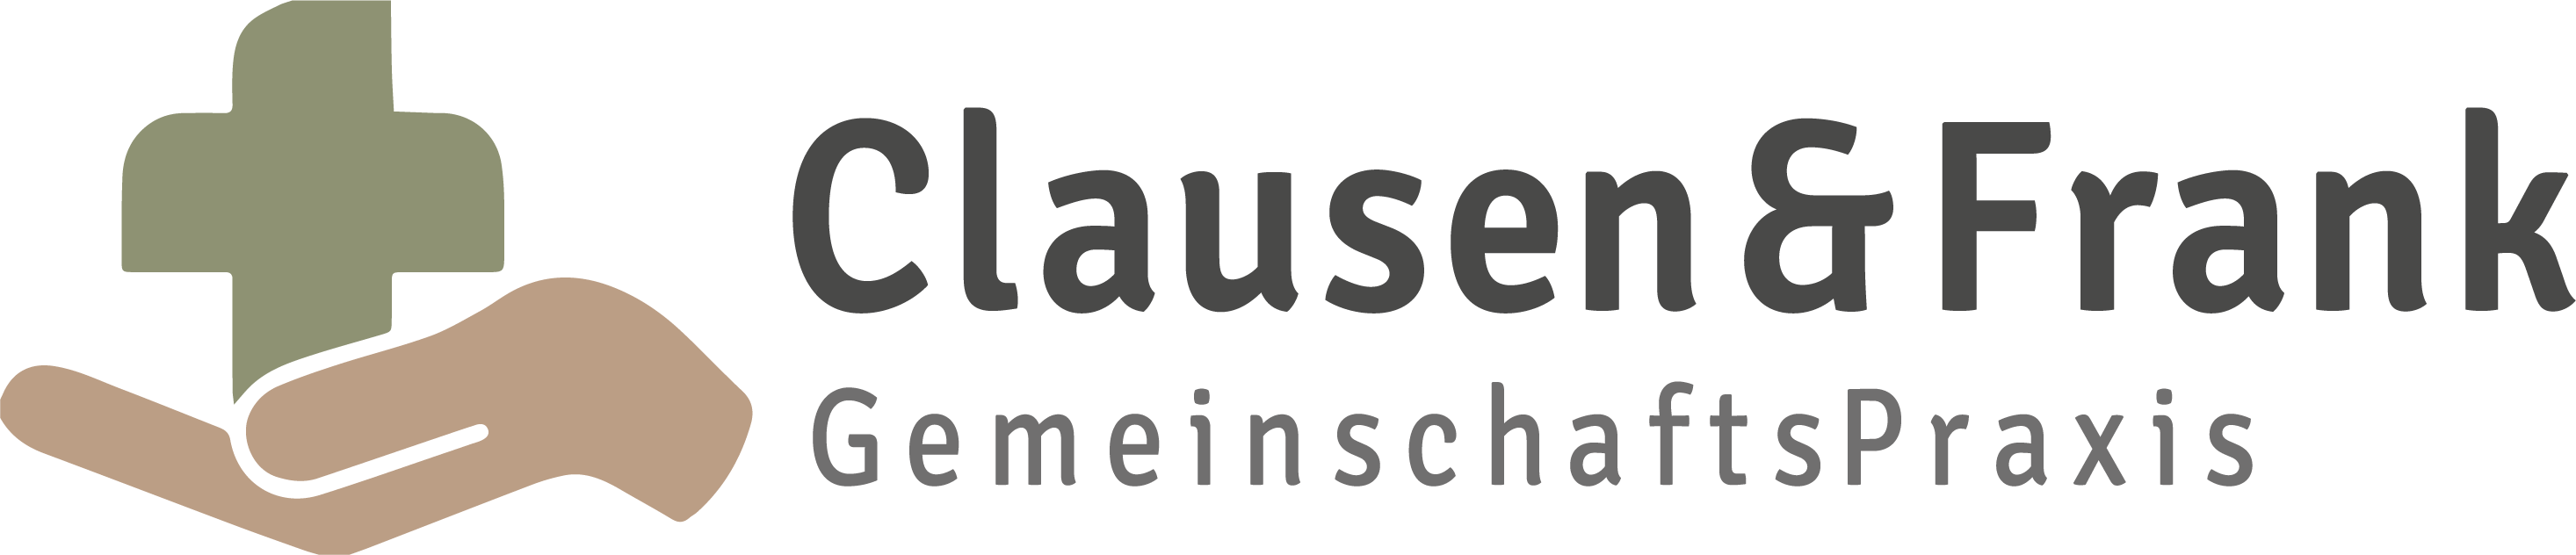 Praxis Clausen & Frank Logo